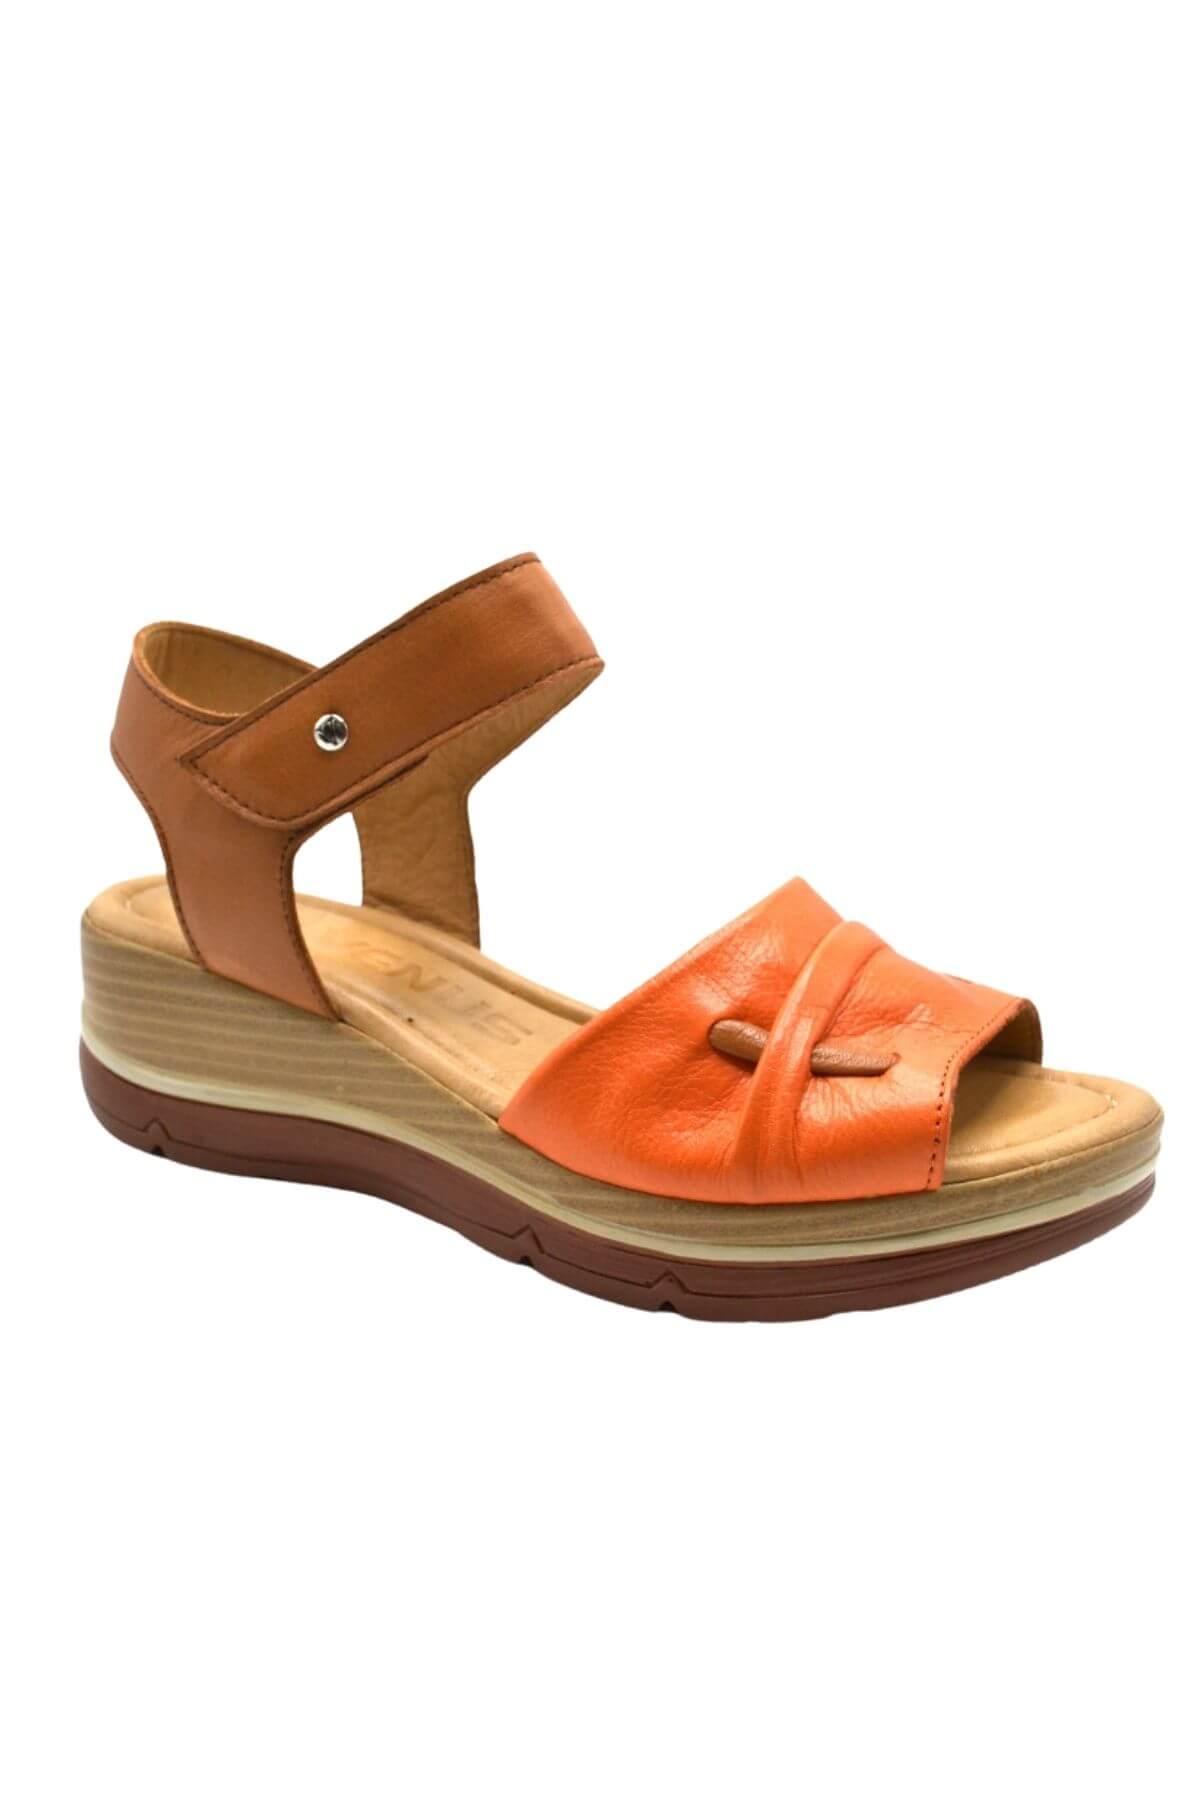 Kadın Comfort Deri Sandalet Oranj 2313402Y - Thumbnail